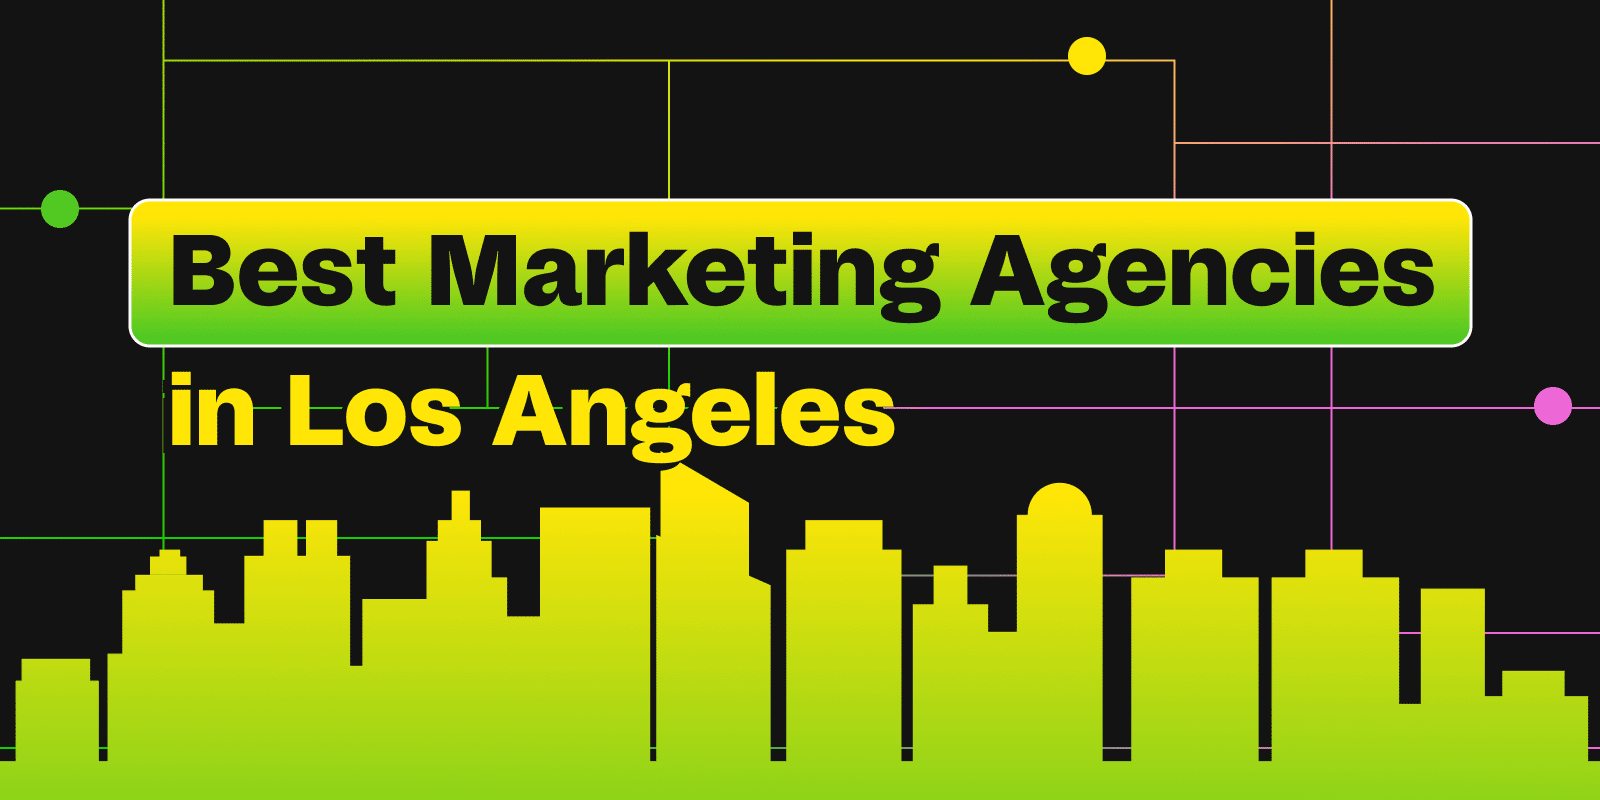 Best Marketing Agencies in Los Angeles